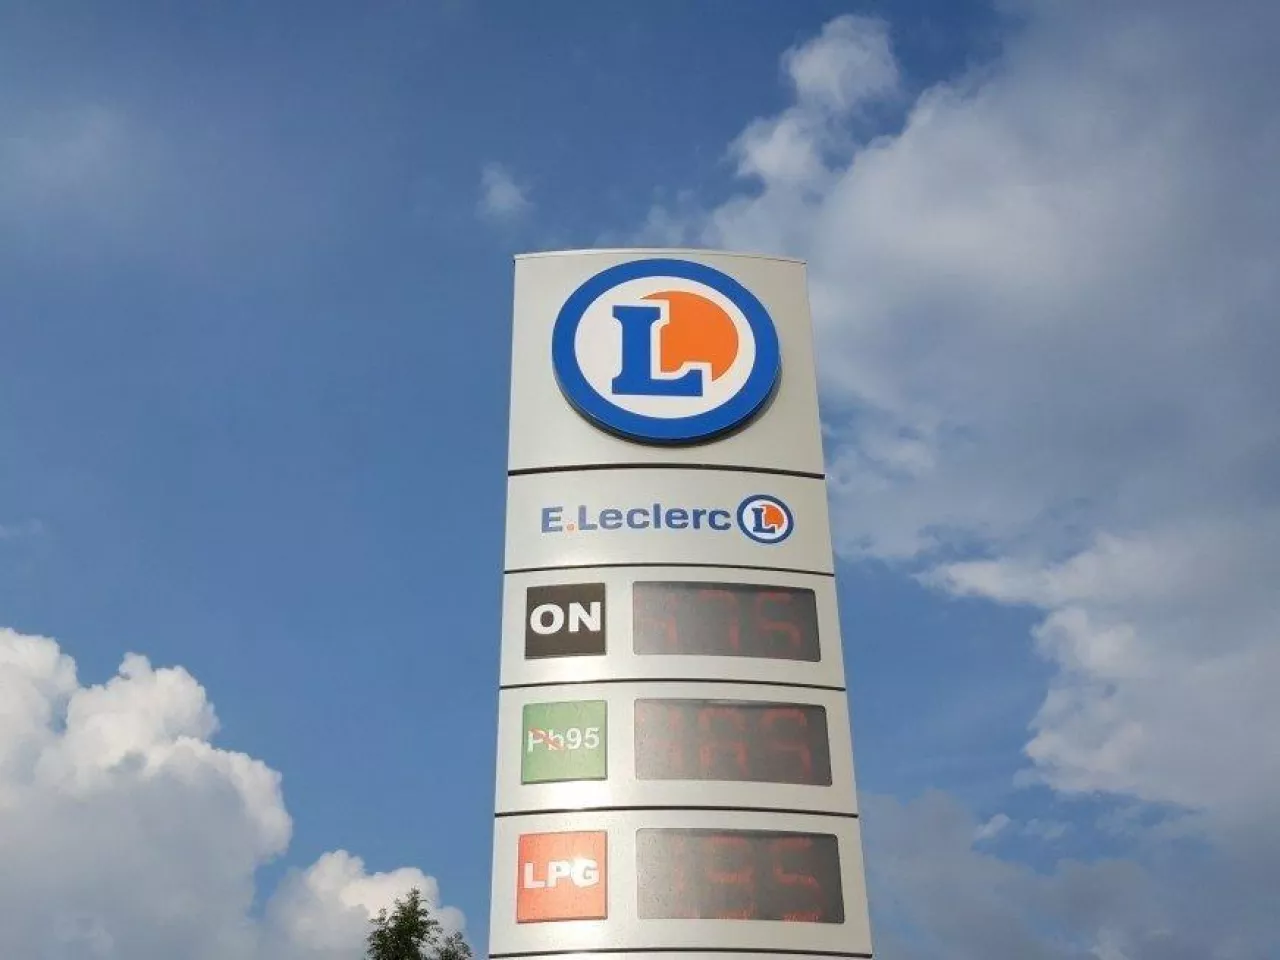 Stacja paliw przy centrum handlowym E.Leclerc w Zamościu (materiały własne)